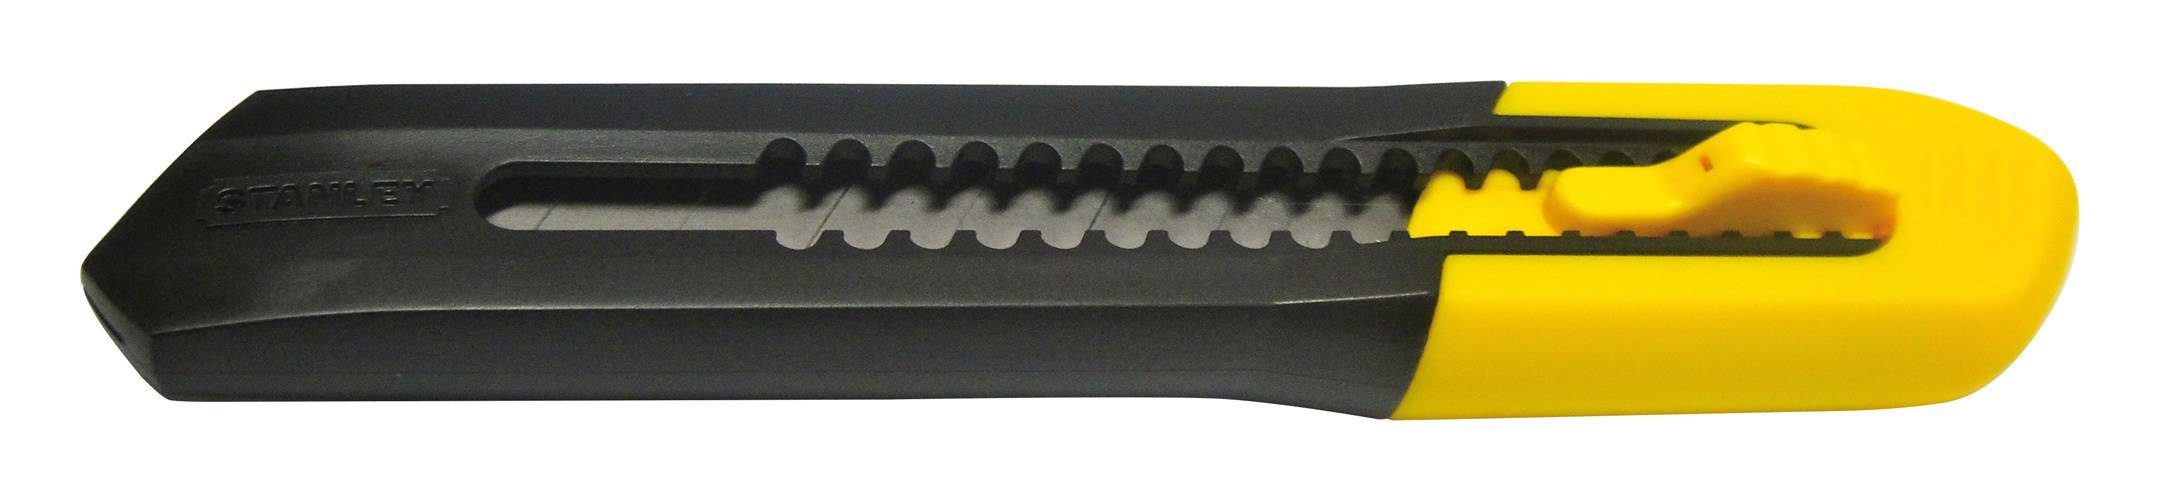 STANLEY Cuttermesser, Klinge: 1.8 cm, SM 18 mm